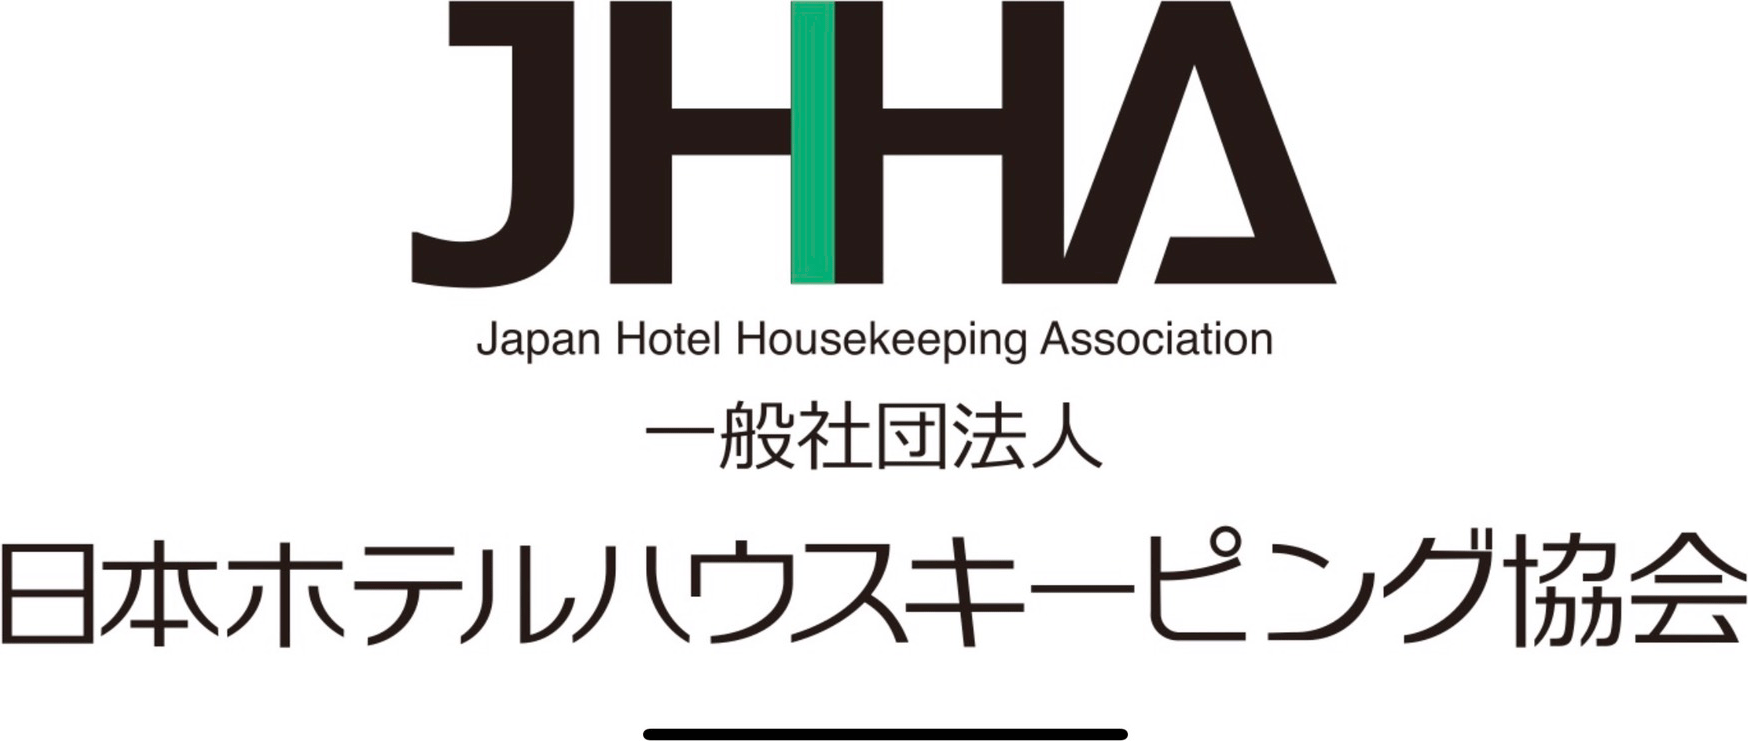 一般社団法人 日本ホテルハウスキーピング協会